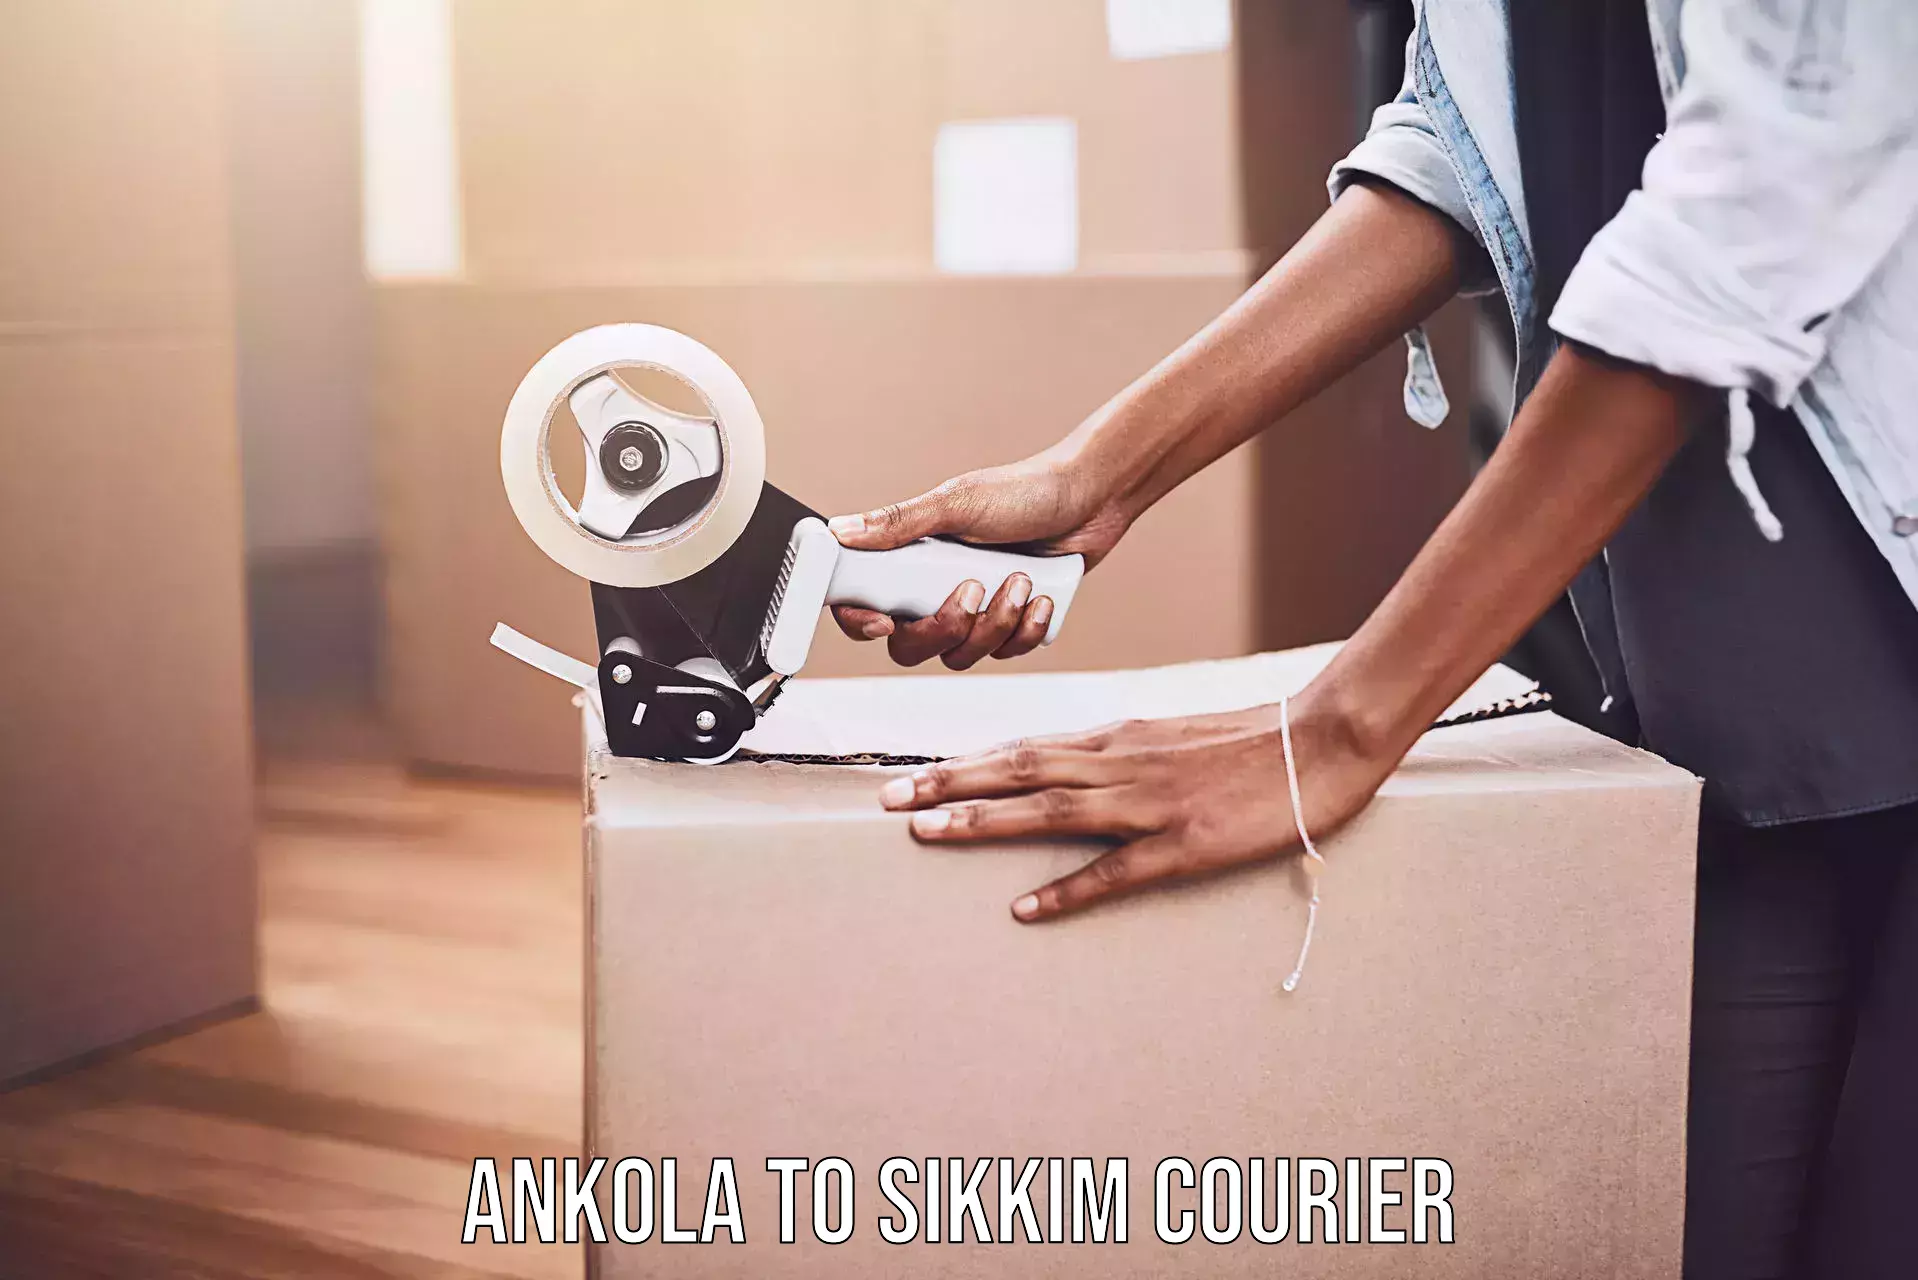 Advanced shipping technology Ankola to Geyzing